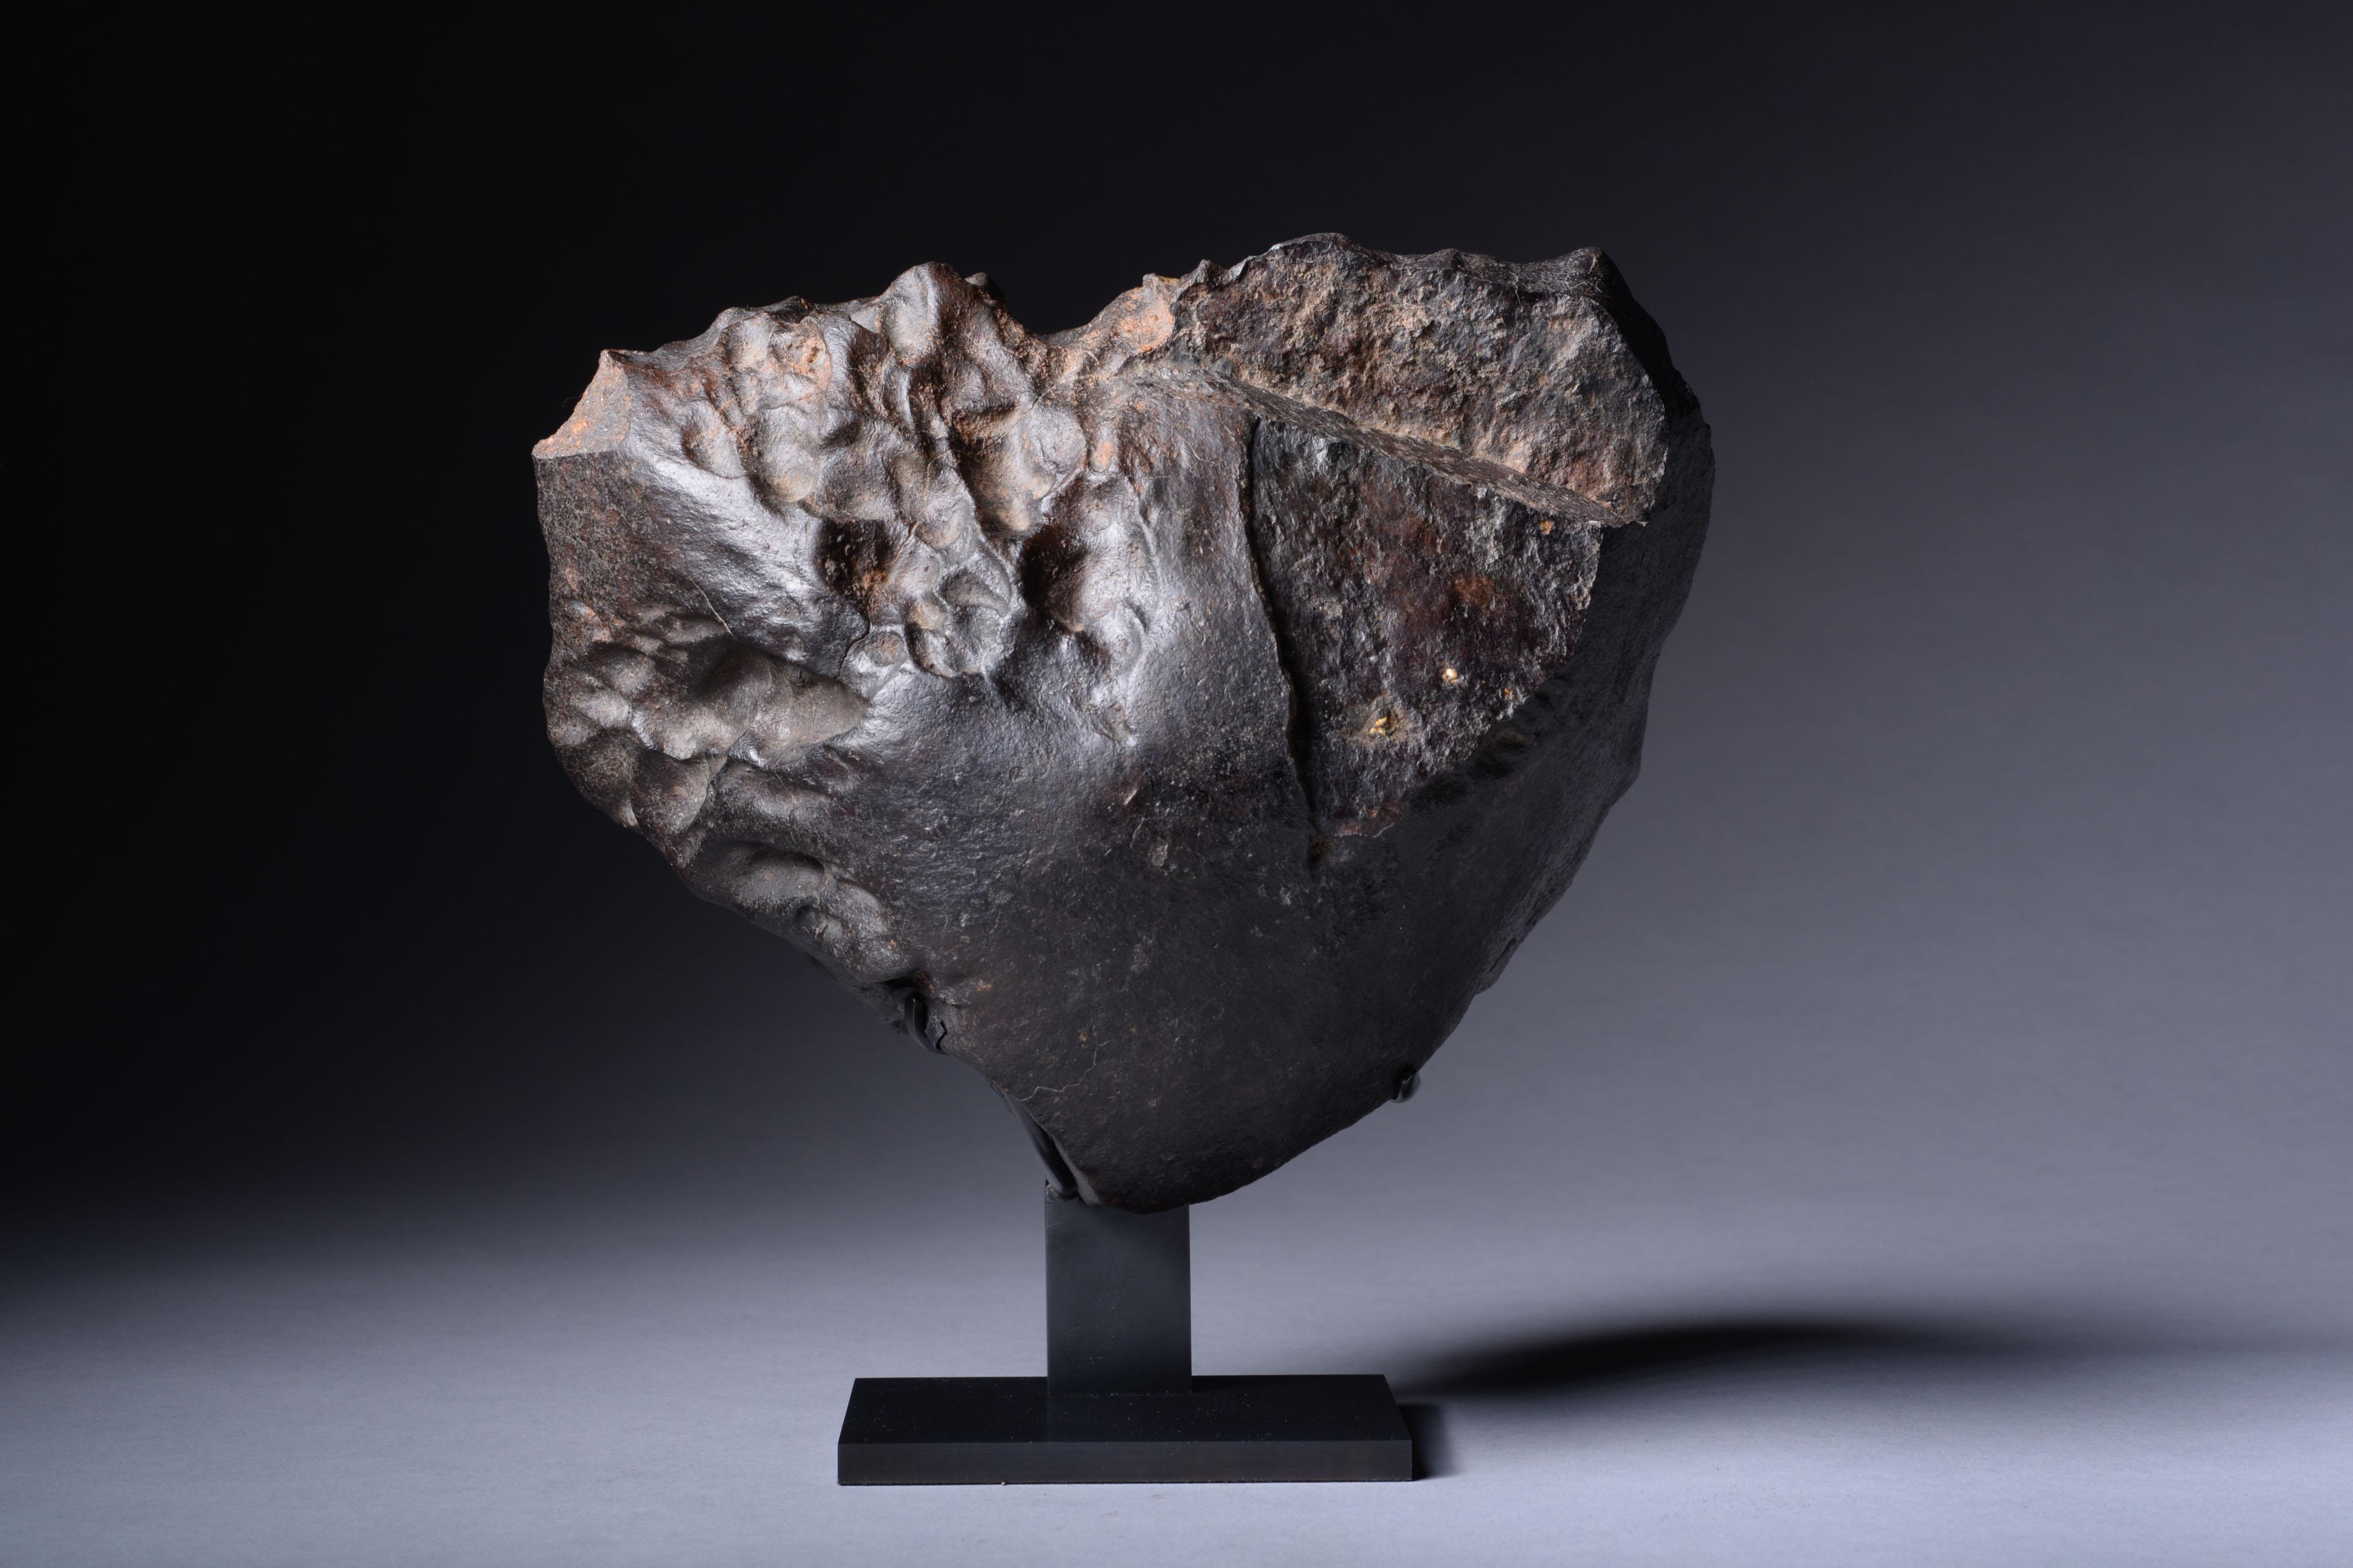 Météorite à pierre orientée
Chondrite
5.00 kg

Détachée de son corps d'origine par un puissant impact, cette grande météorite orientée a parcouru plus de cent millions de kilomètres dans l'espace avant de tomber sur Terre dans le désert